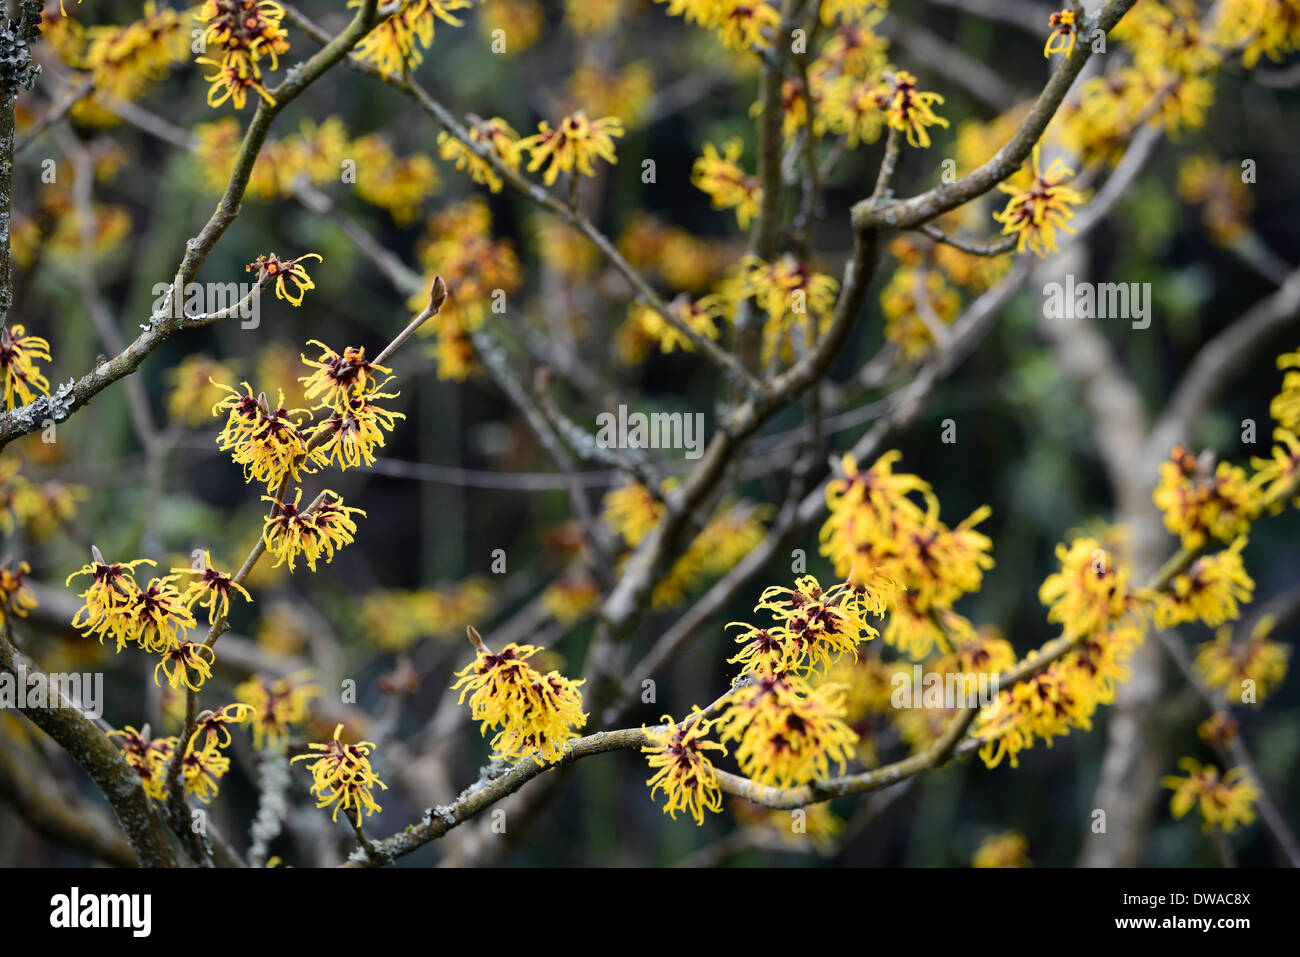 Hamamelis mollis hamamélis chinois hiver jaune noisetiers libre focus sélectif arbustes à feuilles caduques arbres fleurs pétales Banque D'Images